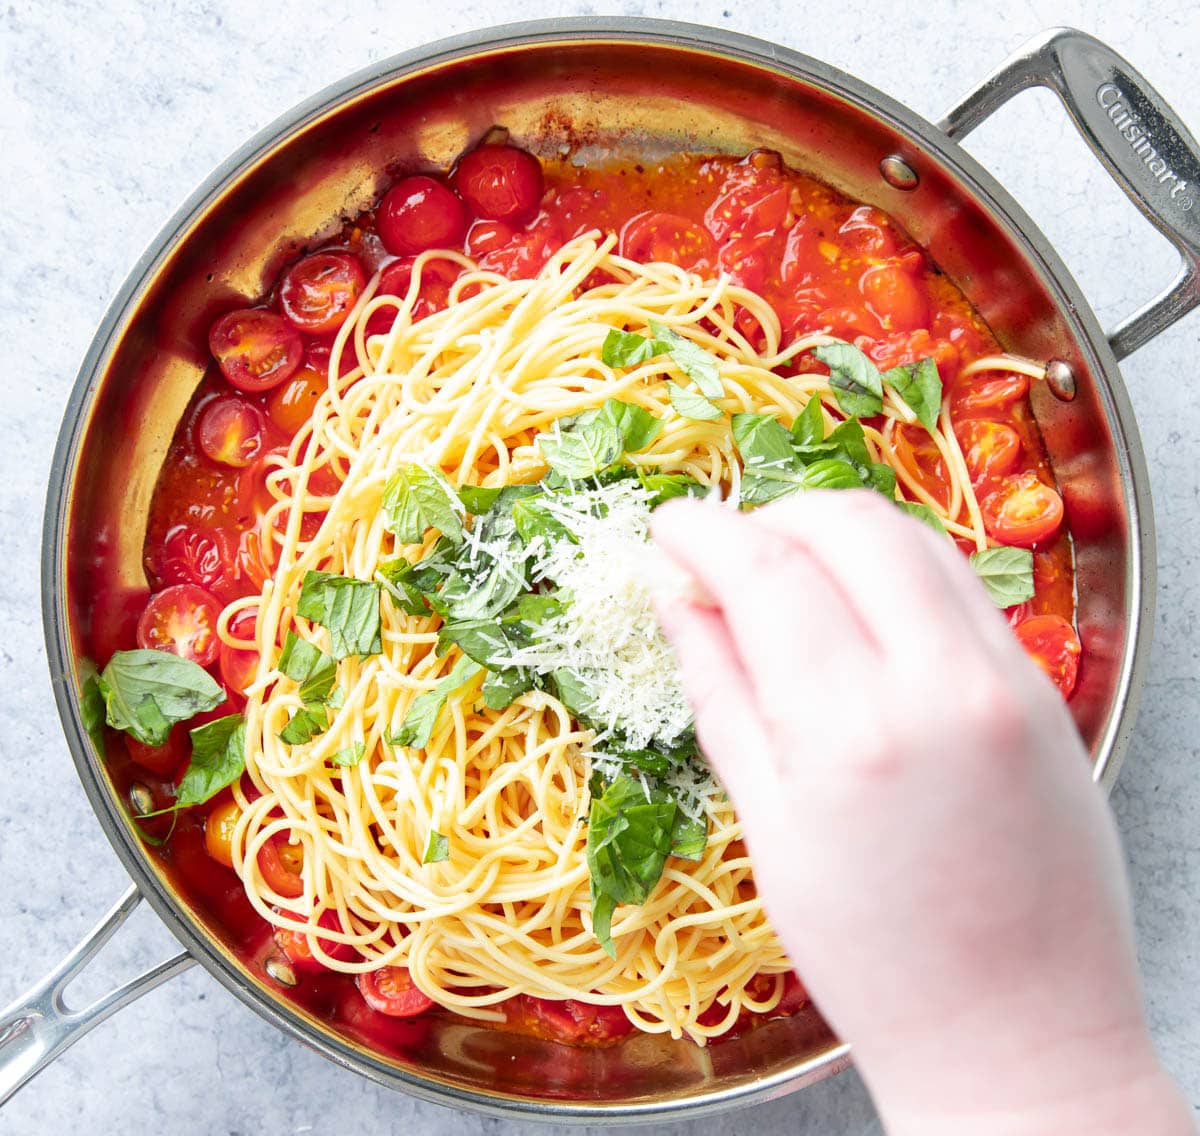 Ręcznie posyp parmezanem świeżą bazylią i spaghetti makaronem pomidorowo-bazyliowym